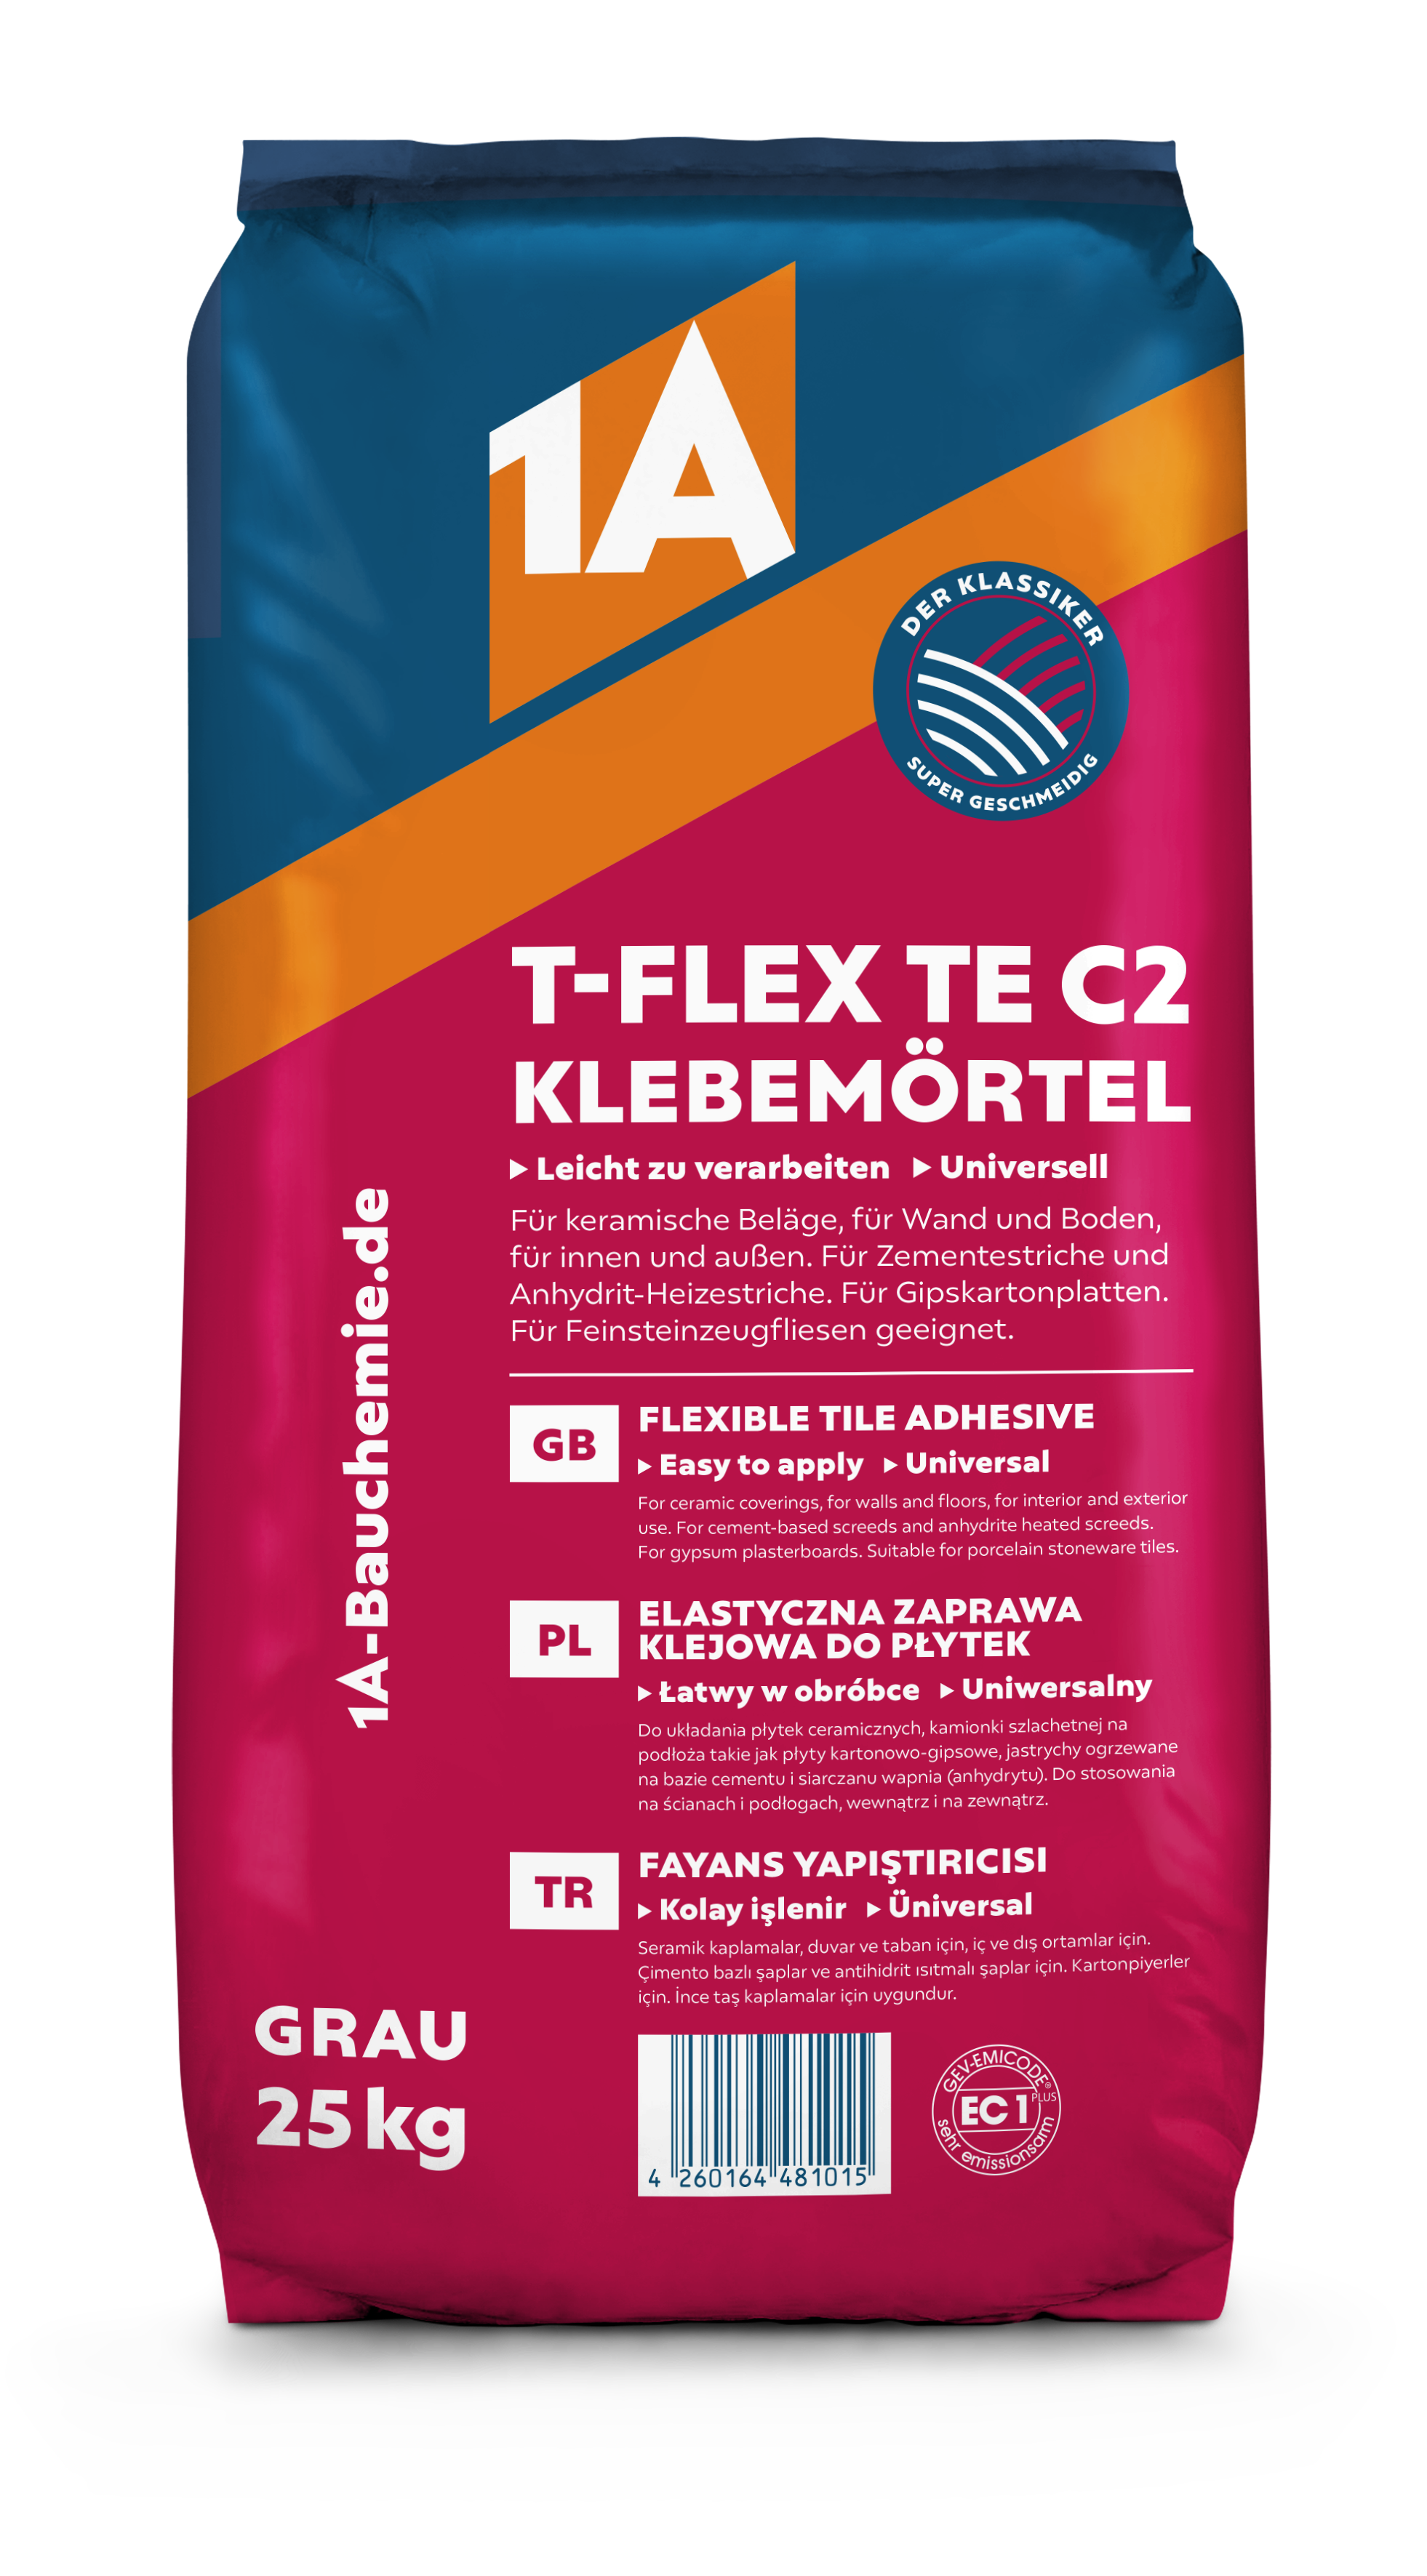 1A T-FLEX TE C2